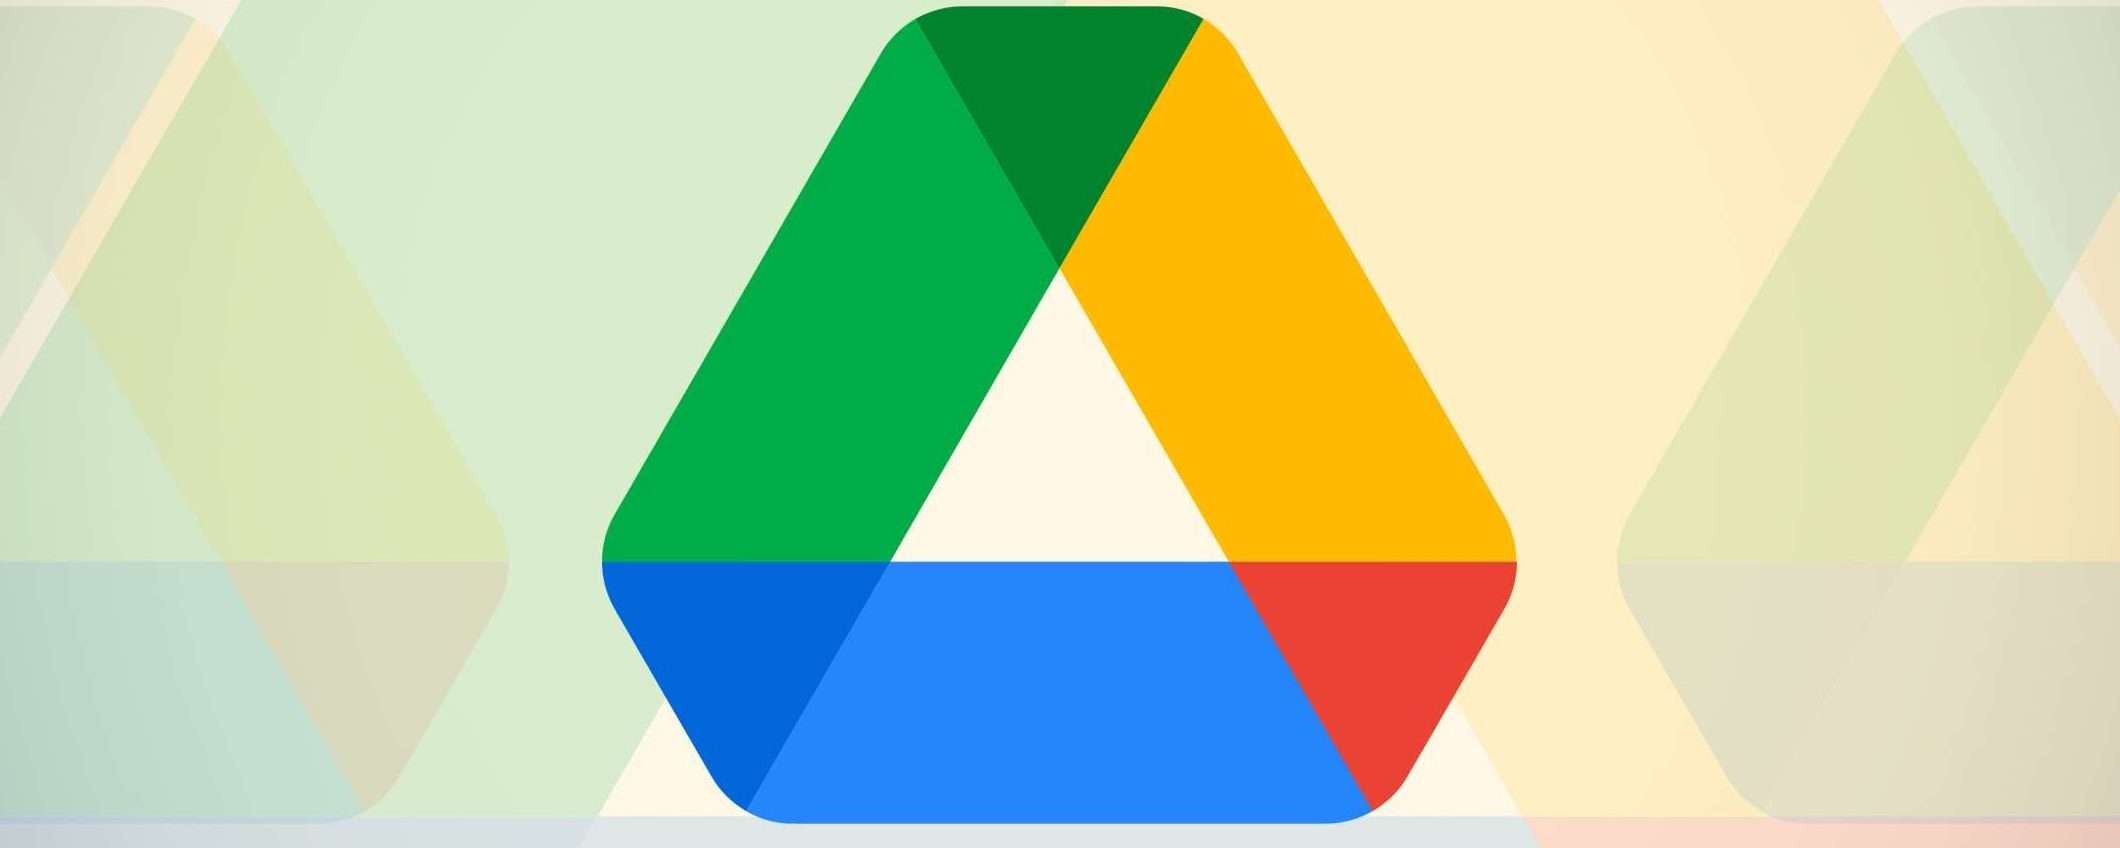 Google Drive: scanner per documenti anche su iPhone e iPad